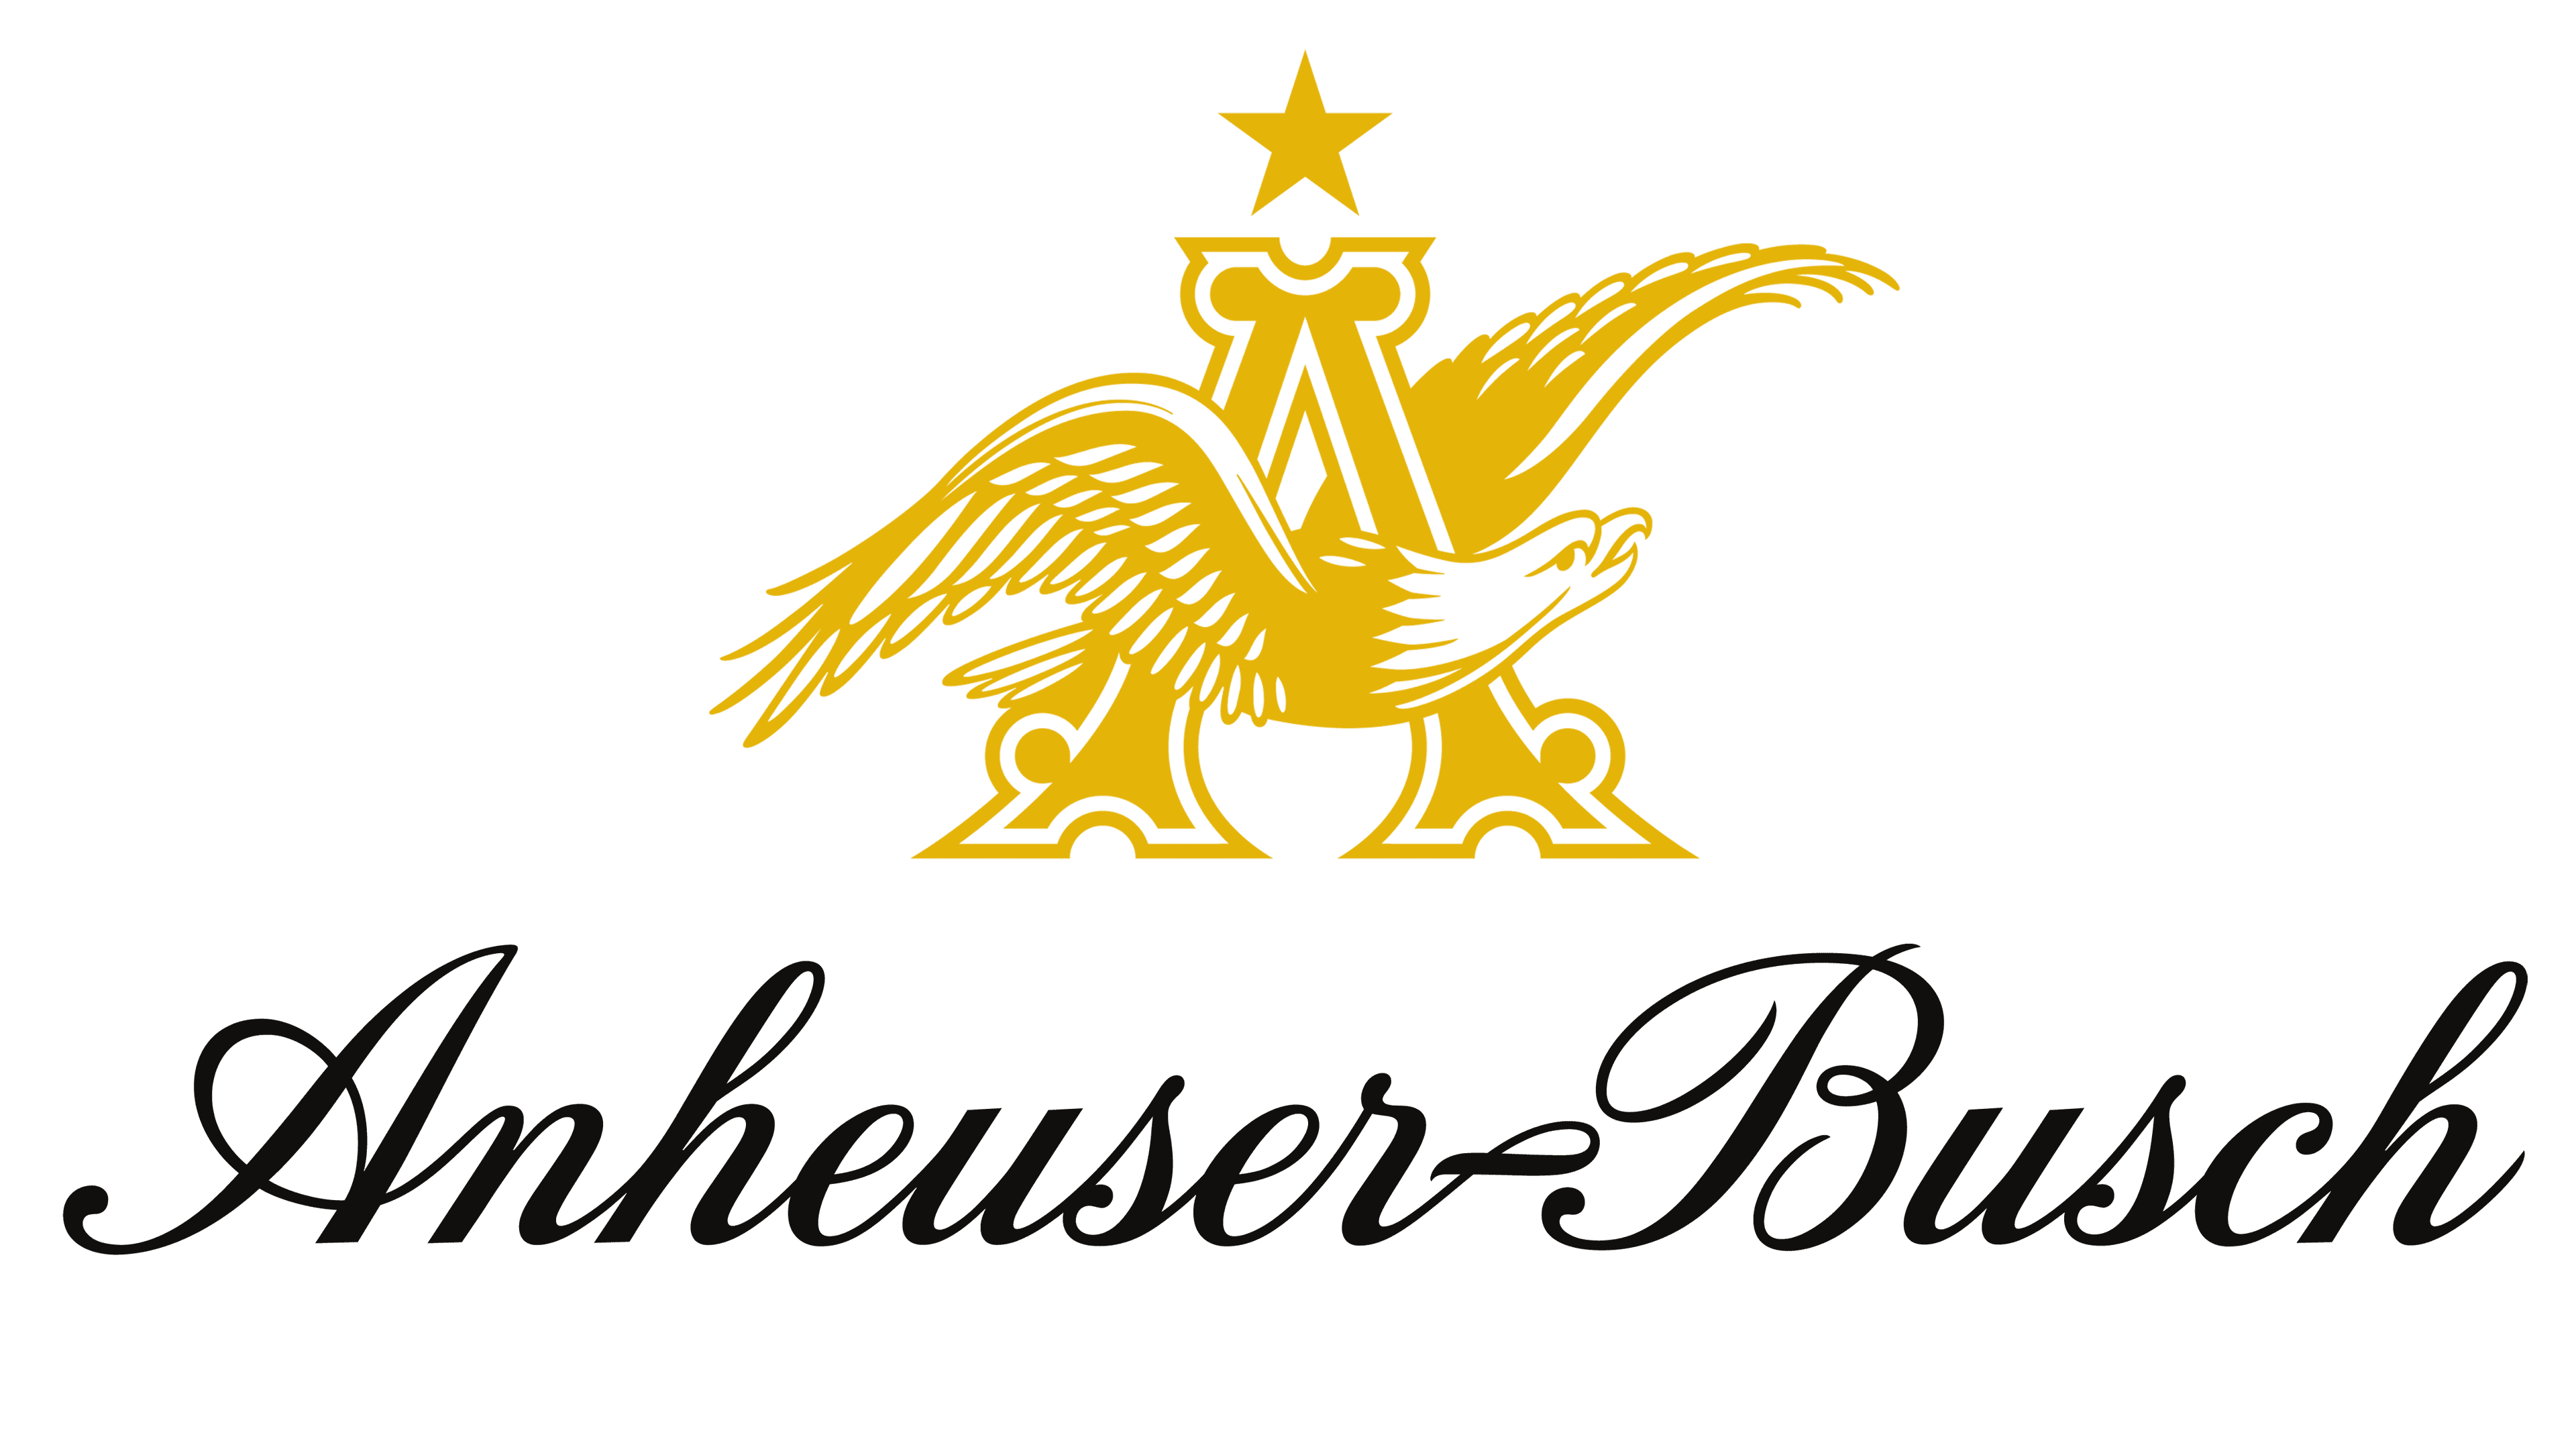 Anheuser-Busch Group